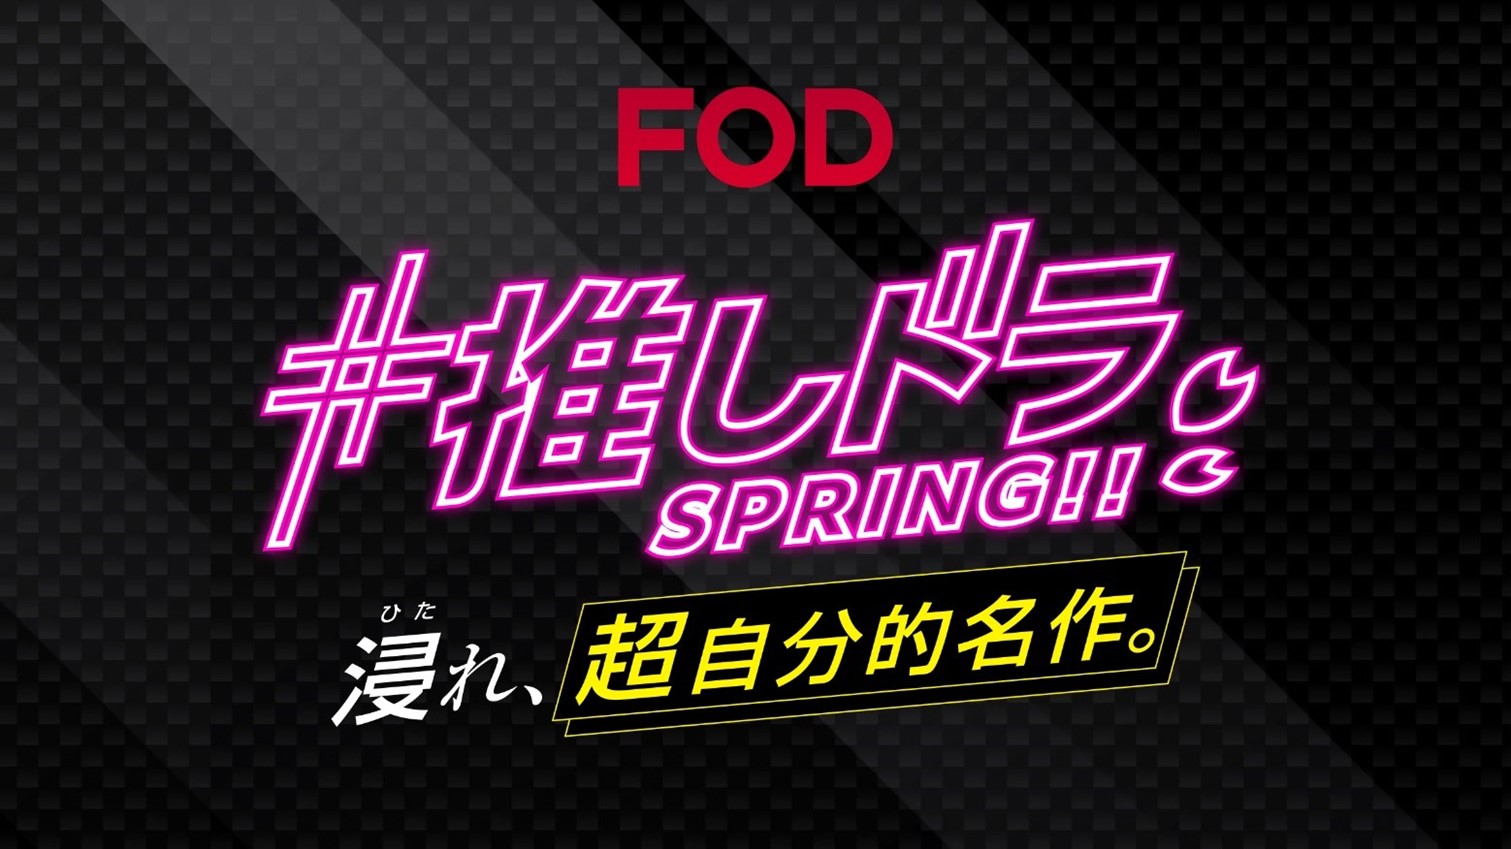 ナレーションに声優・日髙のり子、林原めぐみを起用
「#推しドラ SPRING!! 浸れ、超自分的名作。」
FOD春の新キャンペーンCMを公開！